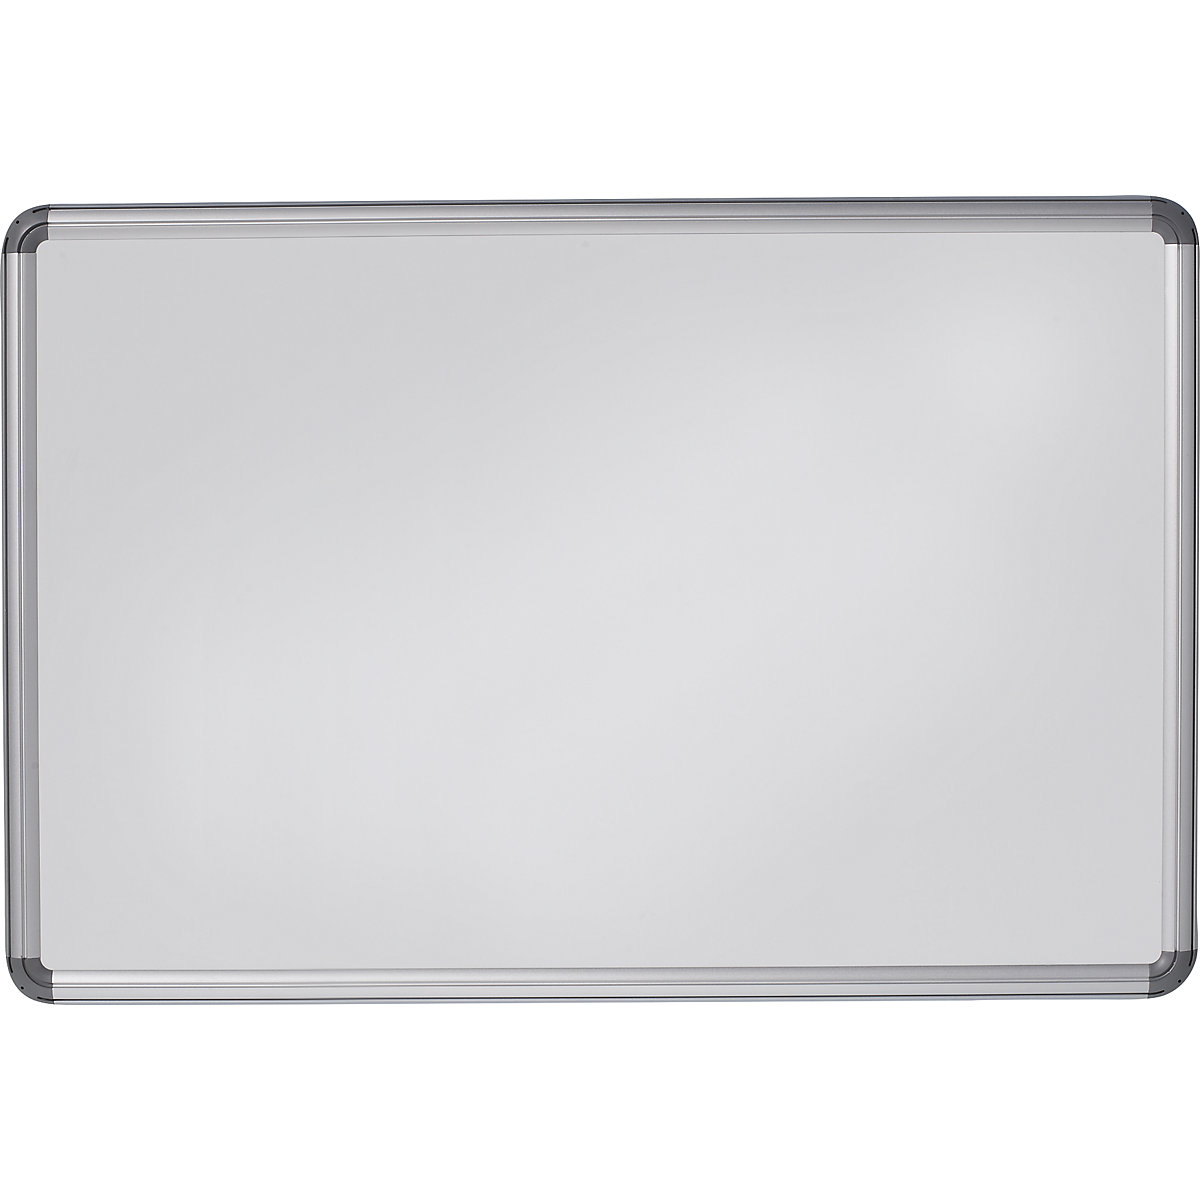 Elegantní nástěnná tabule – eurokraft pro, ocelový plech, lakováno, š x v 1500 x 1000 mm, bílá